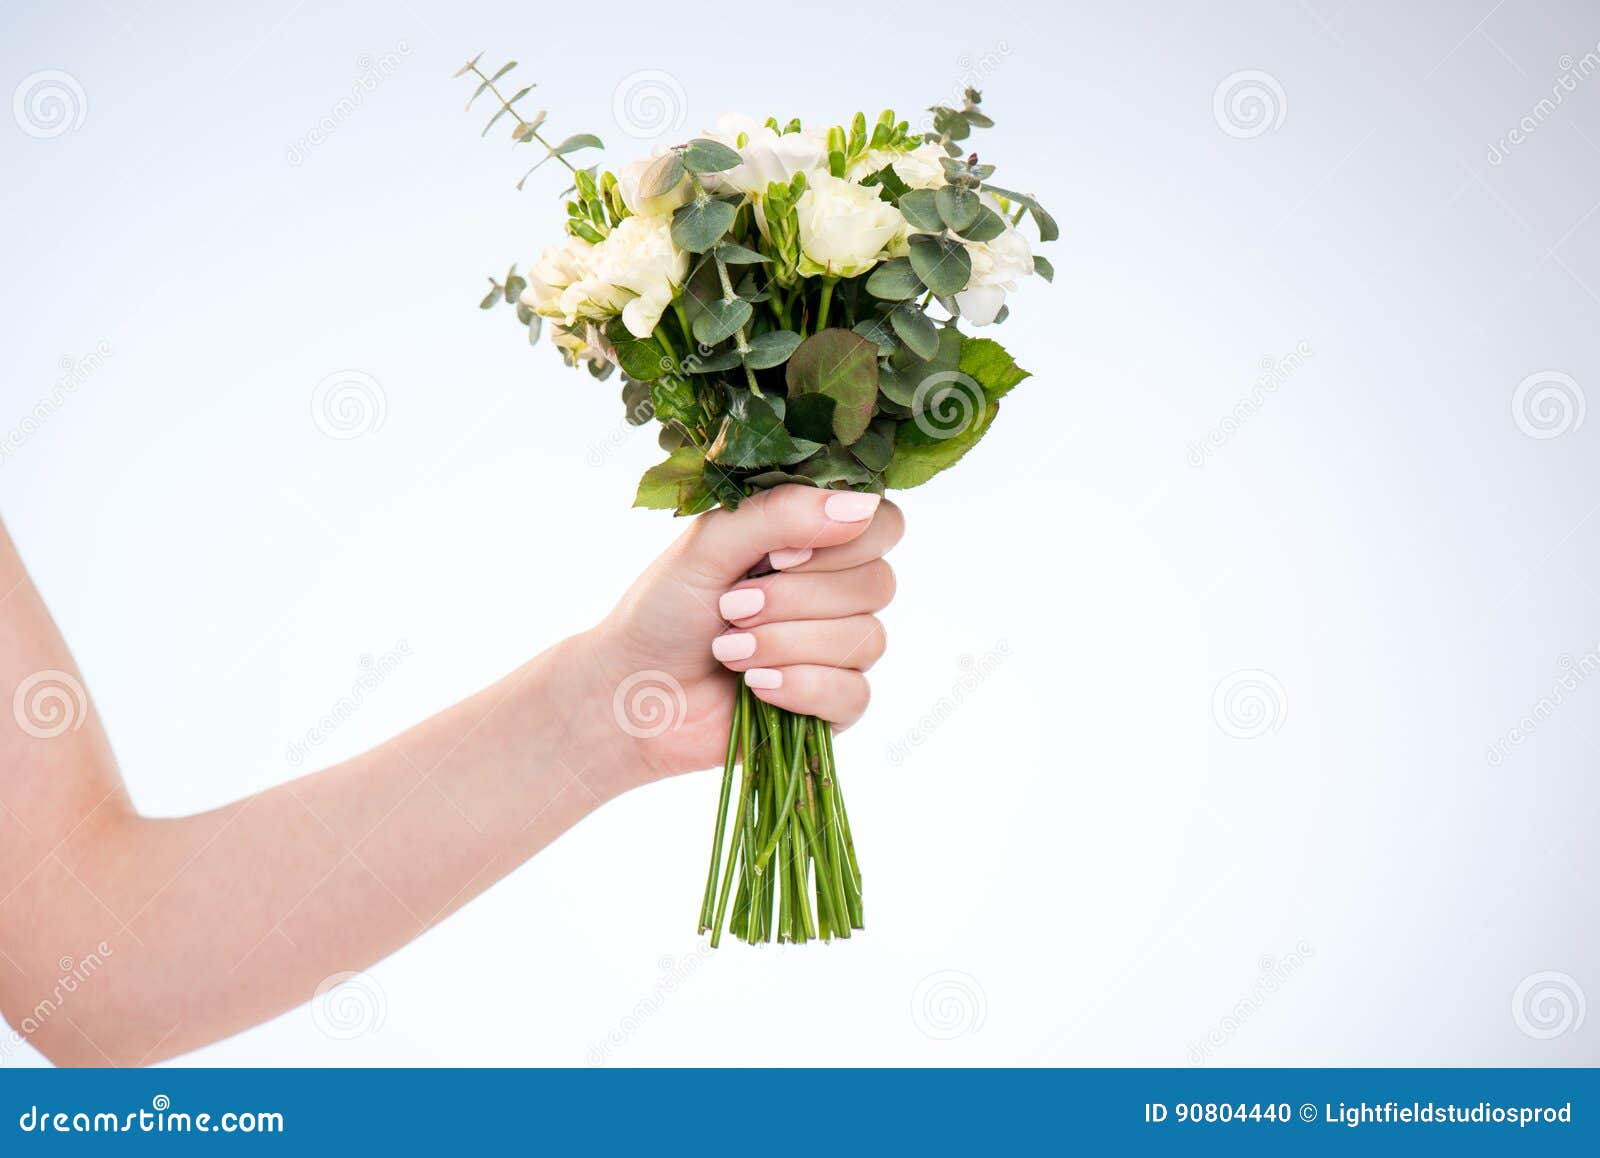 Песня держа в руках цветов букет. Небольшой букет в руках. Держит букет. Женская рука держит букет. Рука держит цветок.